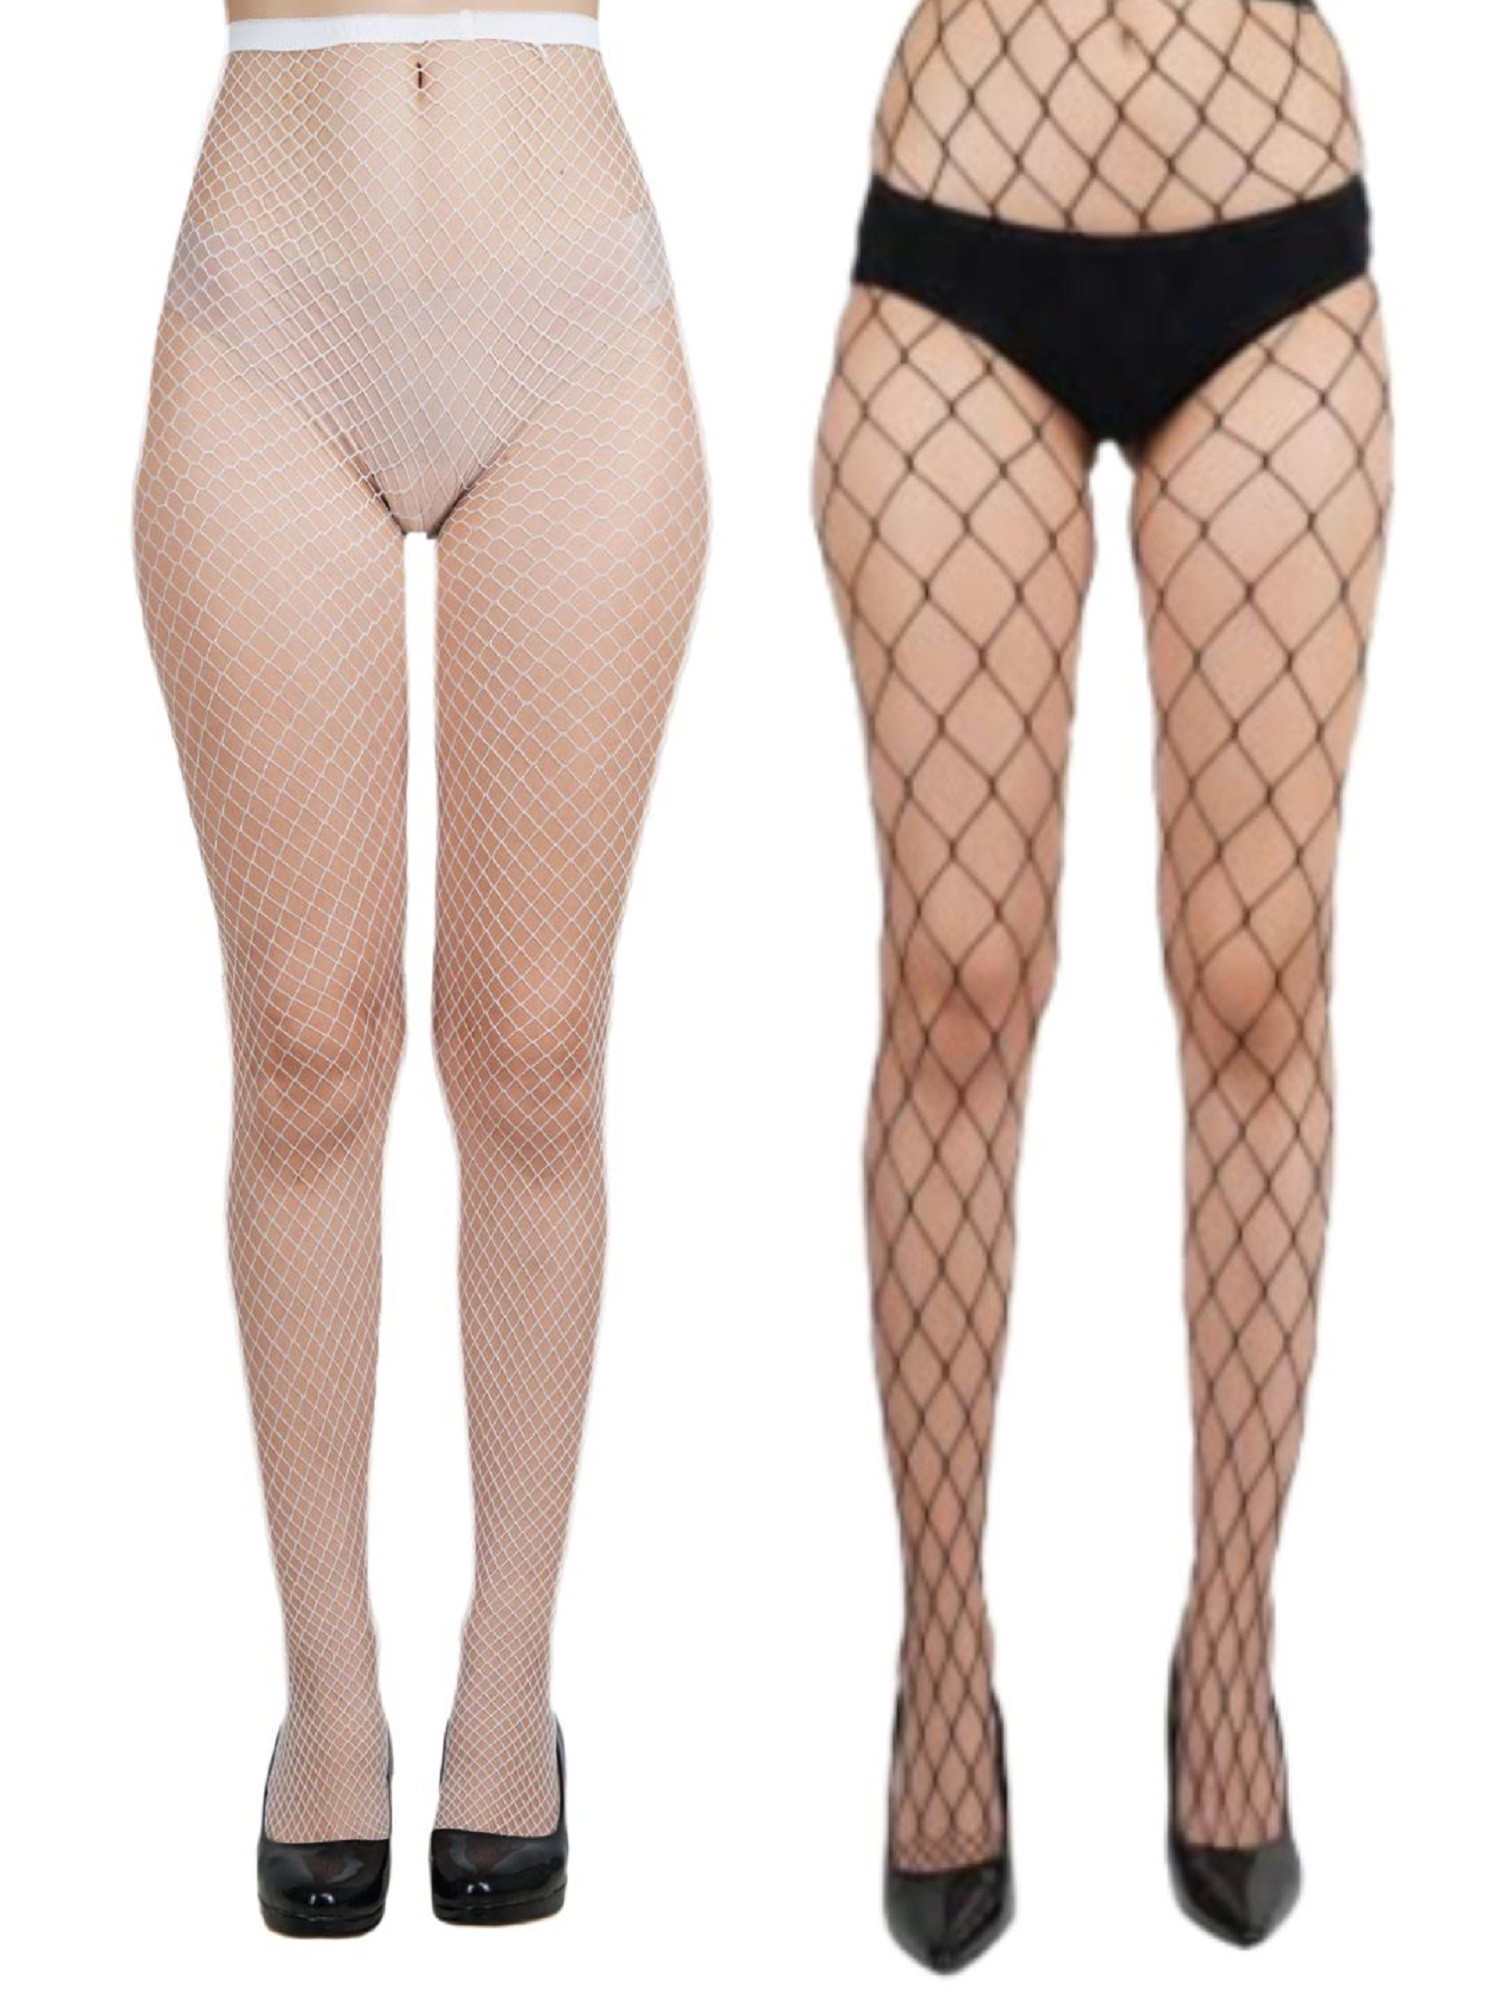 NEXT2SKIN Women's Fishnet Pattern Mesh Pantyhose Stockings Pack of 2 (White&Black, MediumNet-XLargeNet)